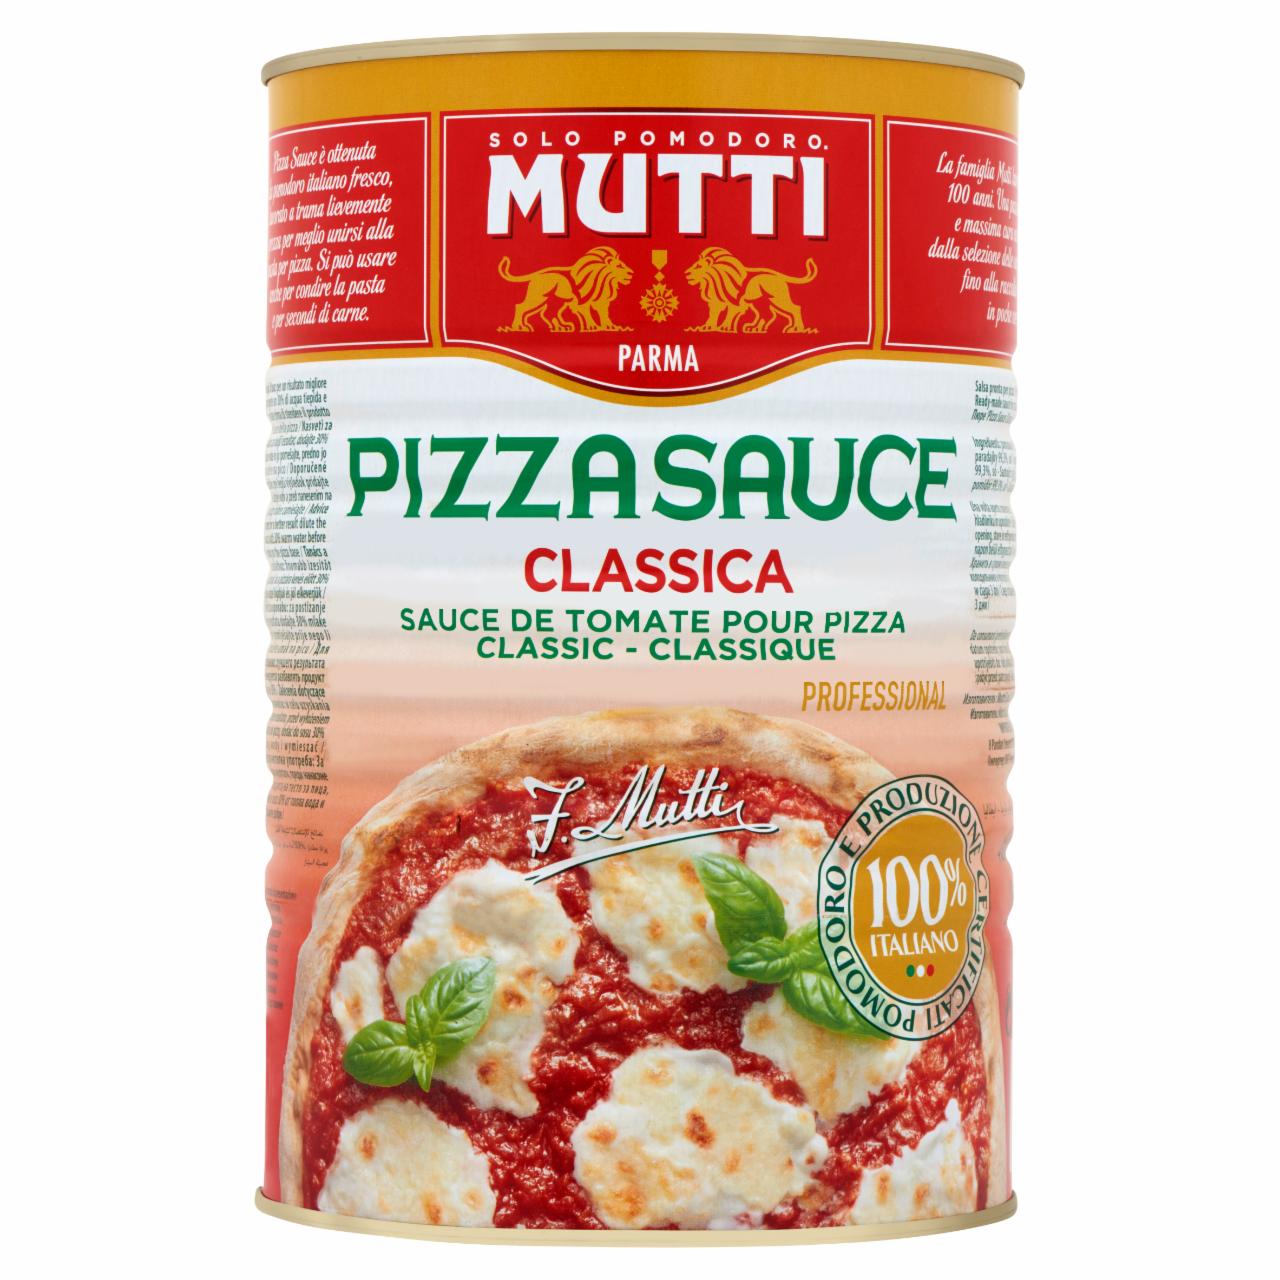 Képek - Mutti kész szósz pizzára 4100 g